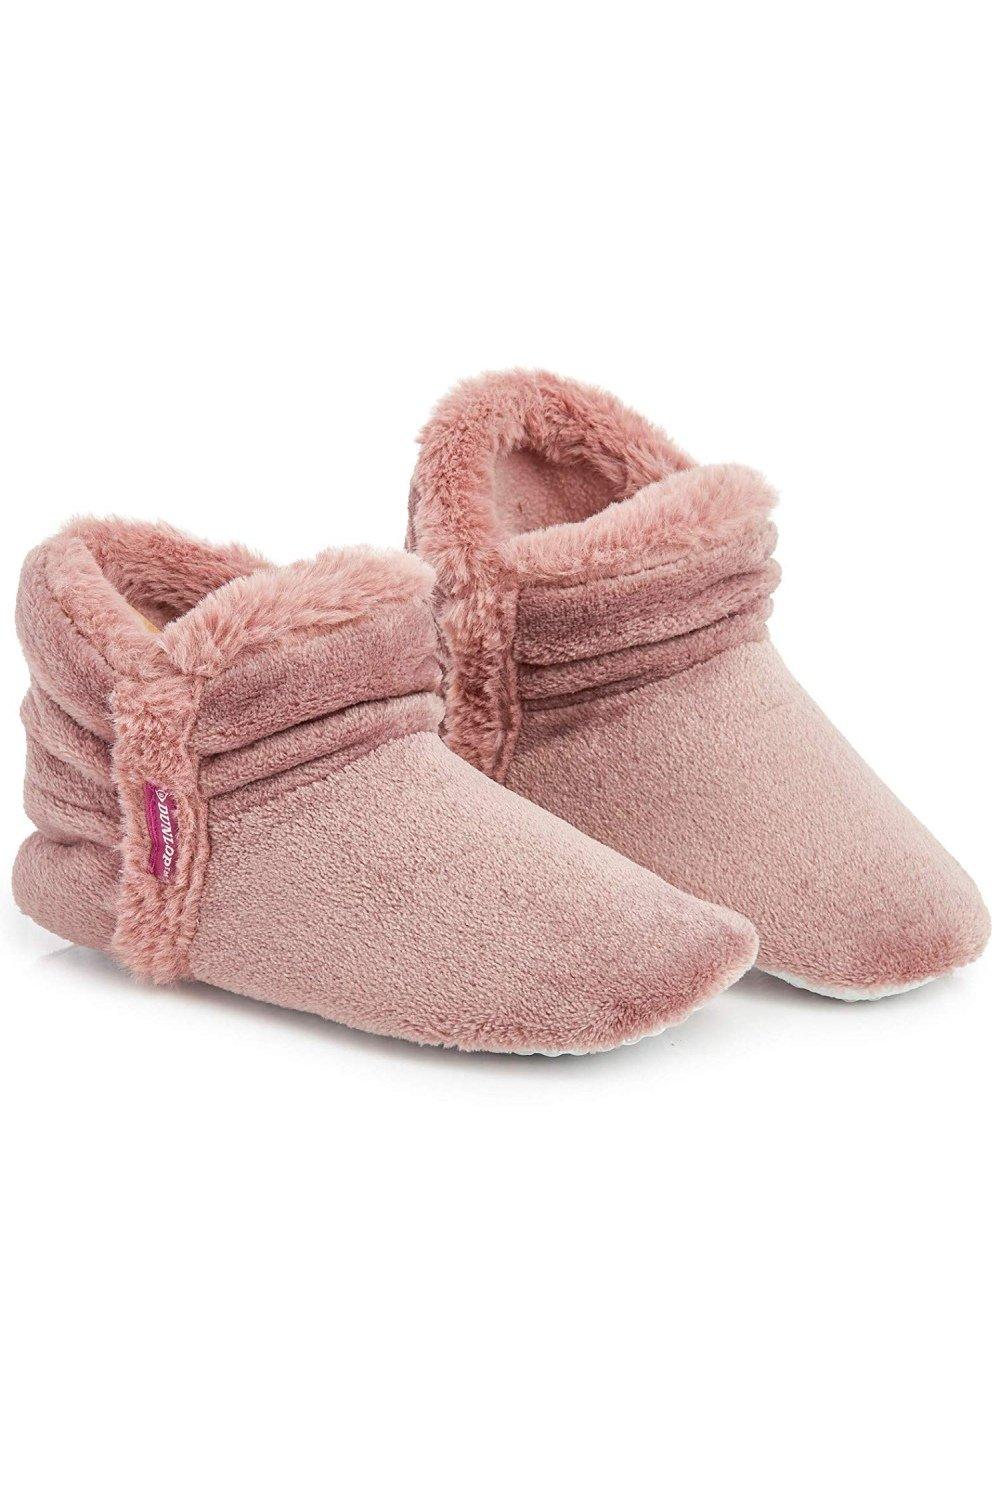 Тапочки-сапожки Dunlop, розовый женские ботинки обувь для женщин ботильоны без шнуровки теплые женские зимние ботинки плюшевая обувь для зимы женские ботинки